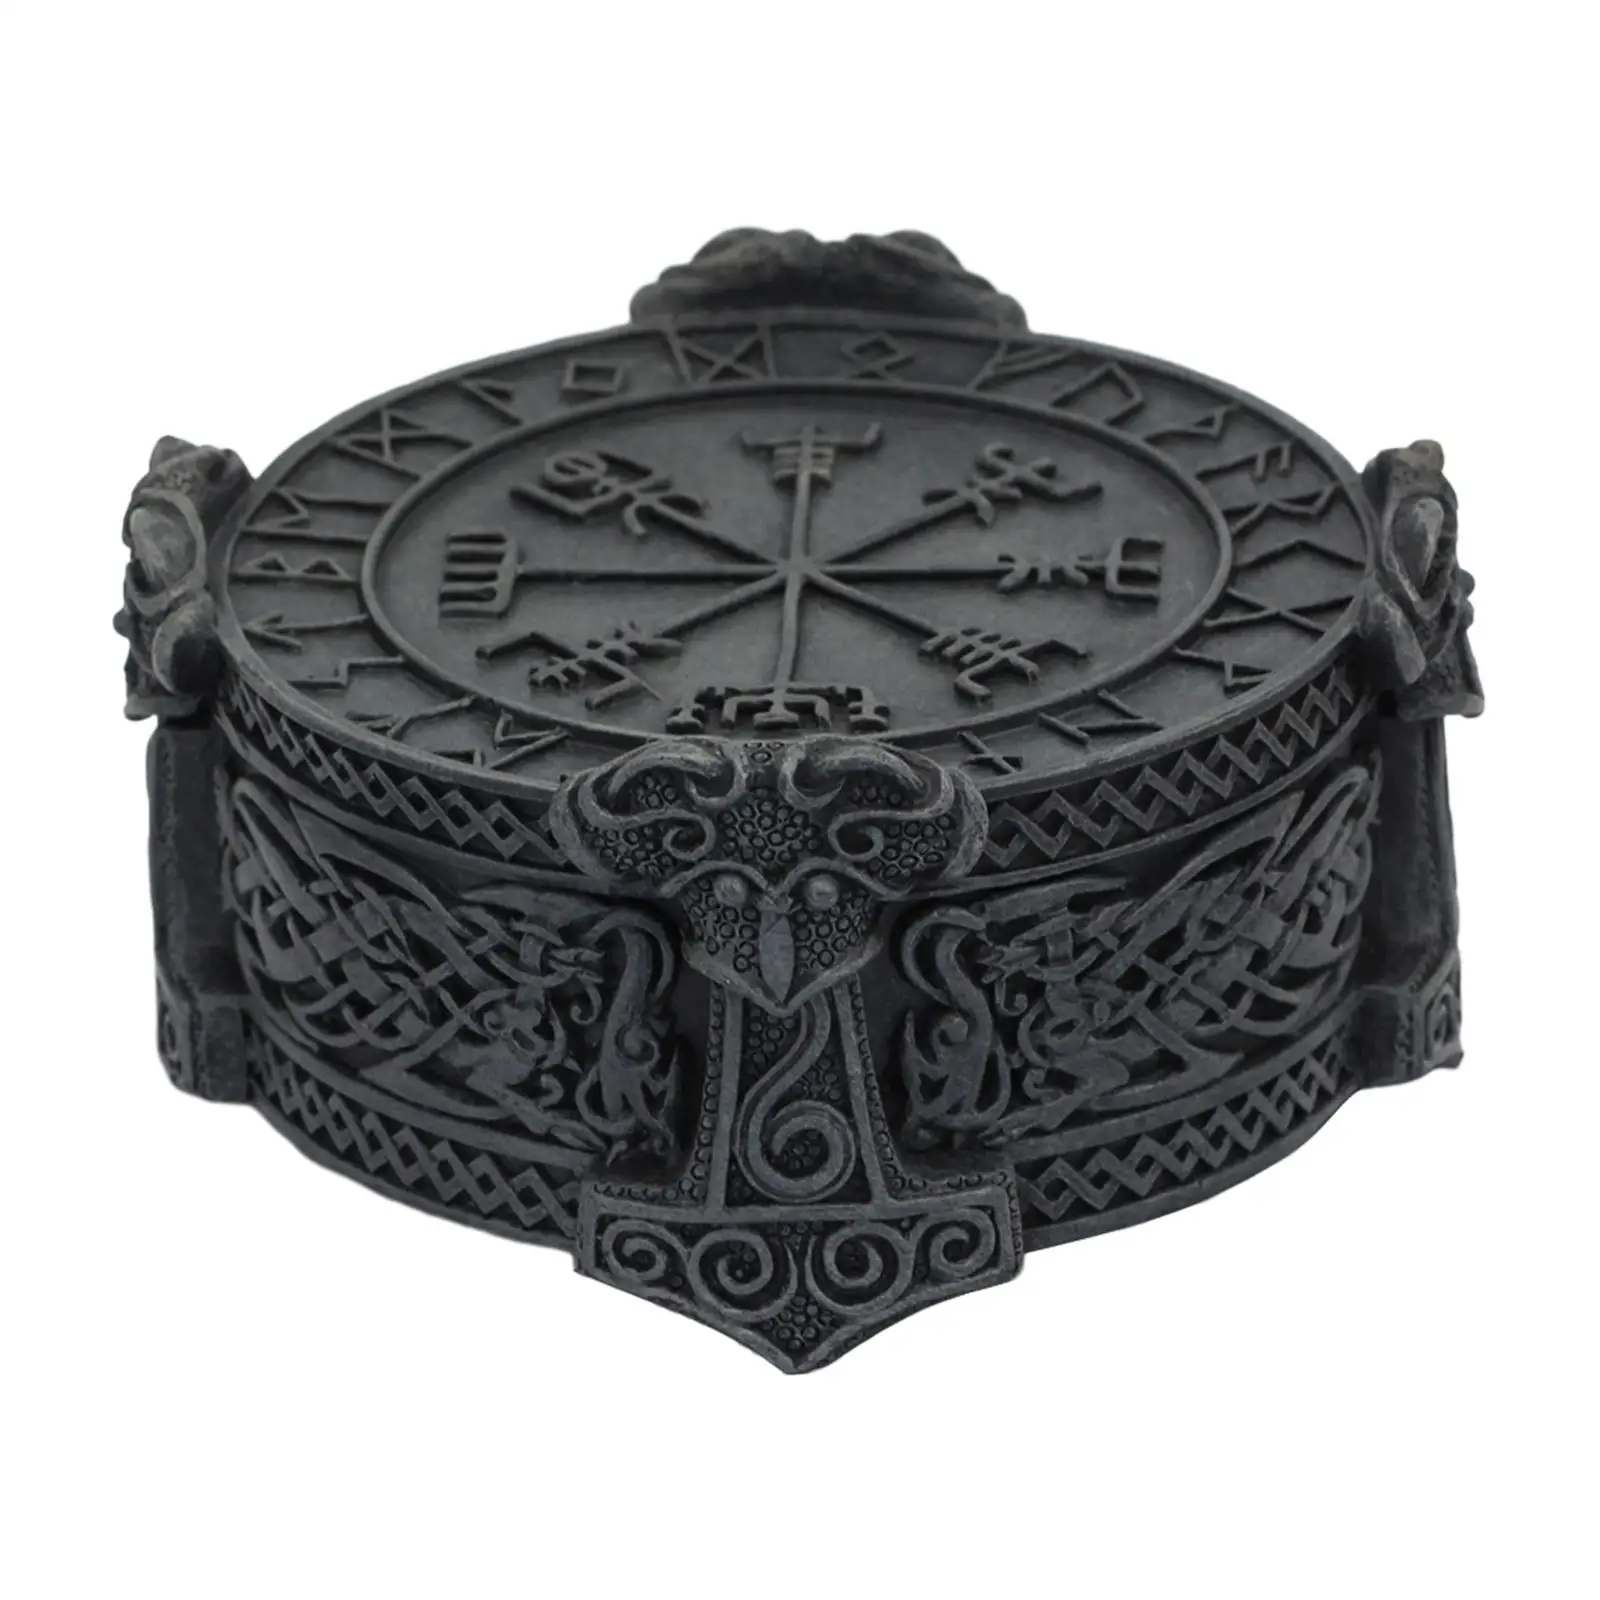 Trinket šperků skříňka tabletop ornamenty displej držák vikingové pro domácí dekorace centerpiece narozeniny dar sběratelskou náhrdelníky